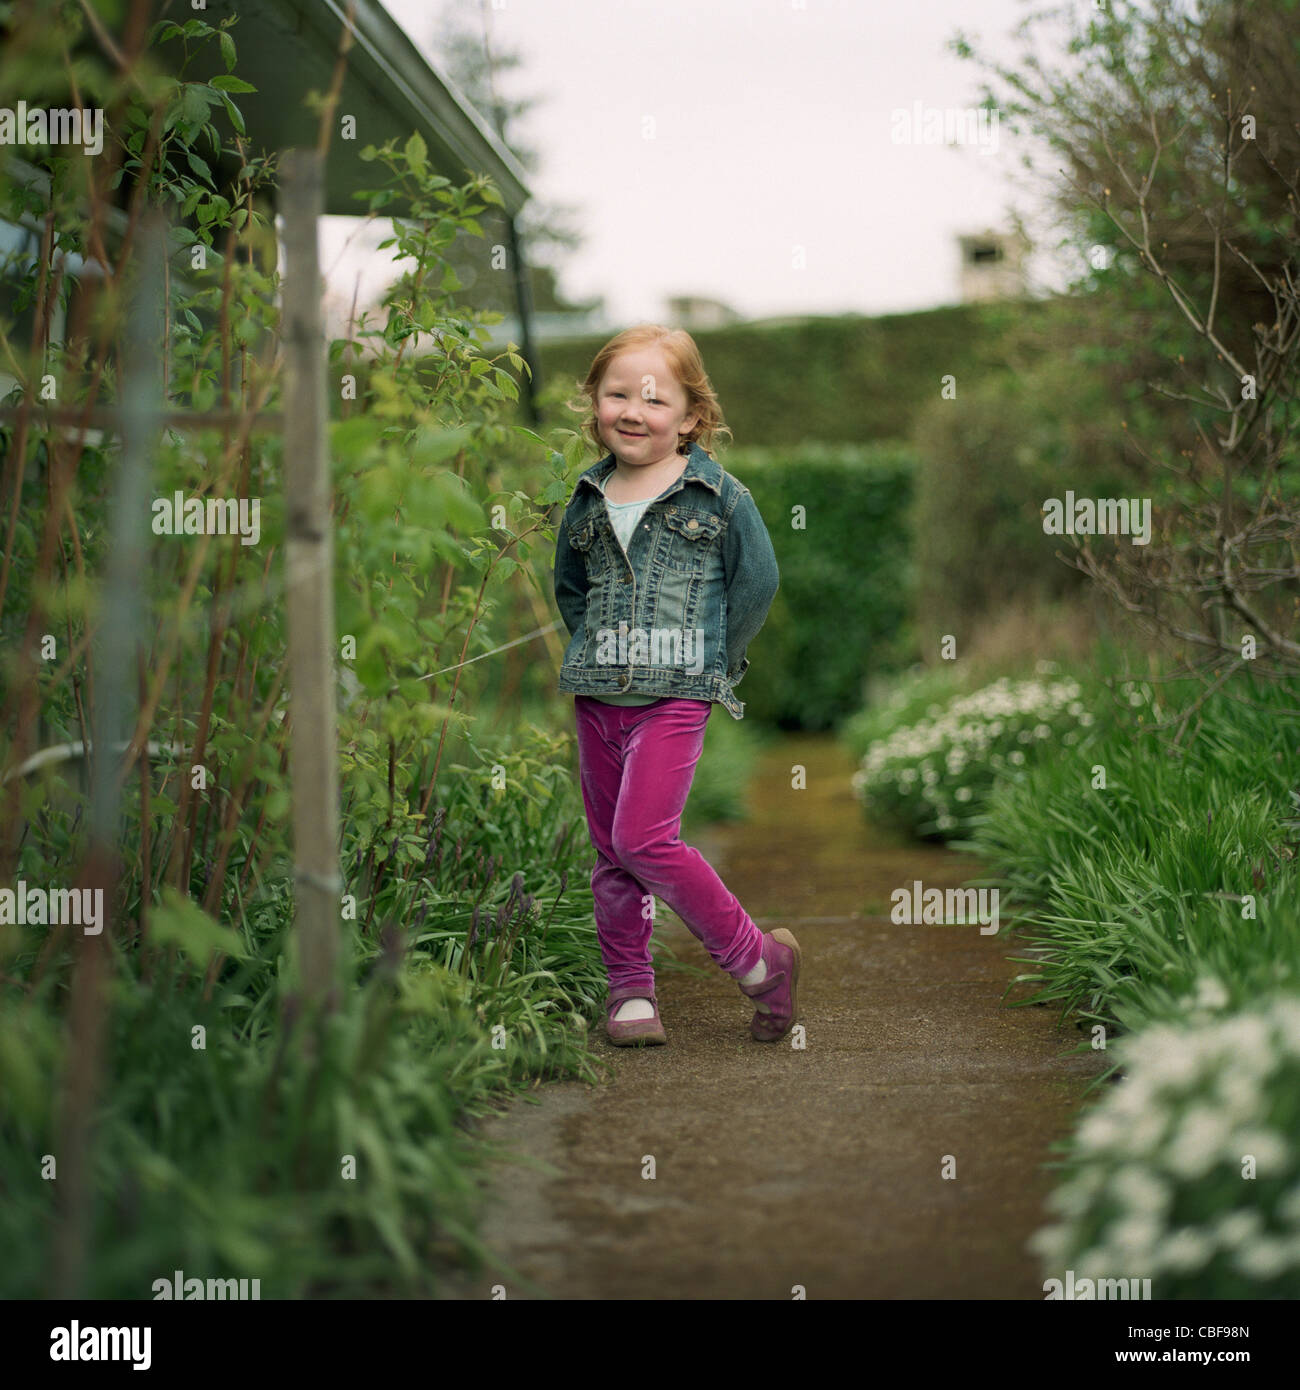 Little girl standing in the garden Stock Photo